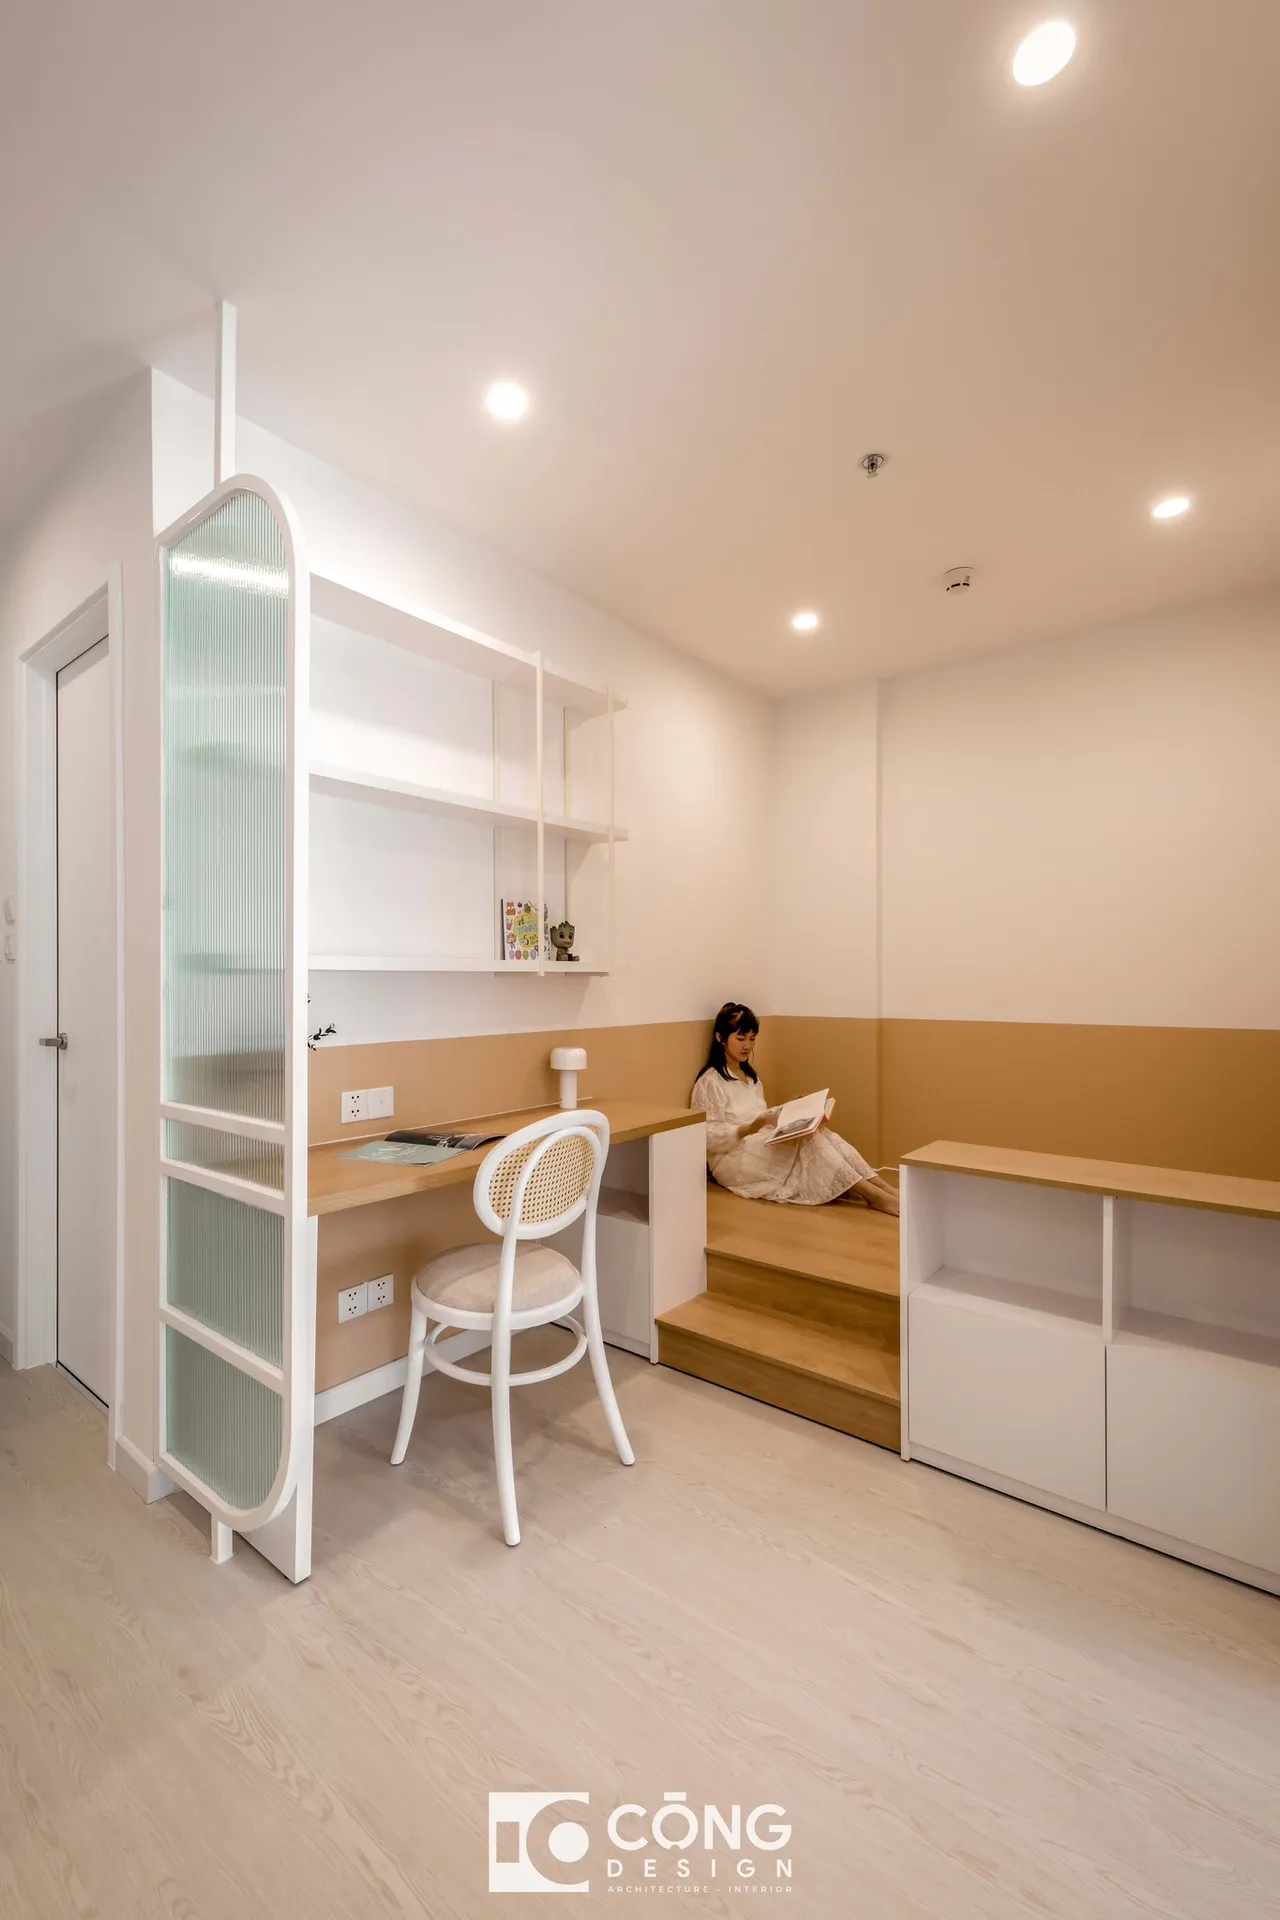 Hoàn thiện nội thất khu vực làm việc, thư giãn Căn hộ S1001 Vinhomes Grand Park phong cách Tối giản Minimalist